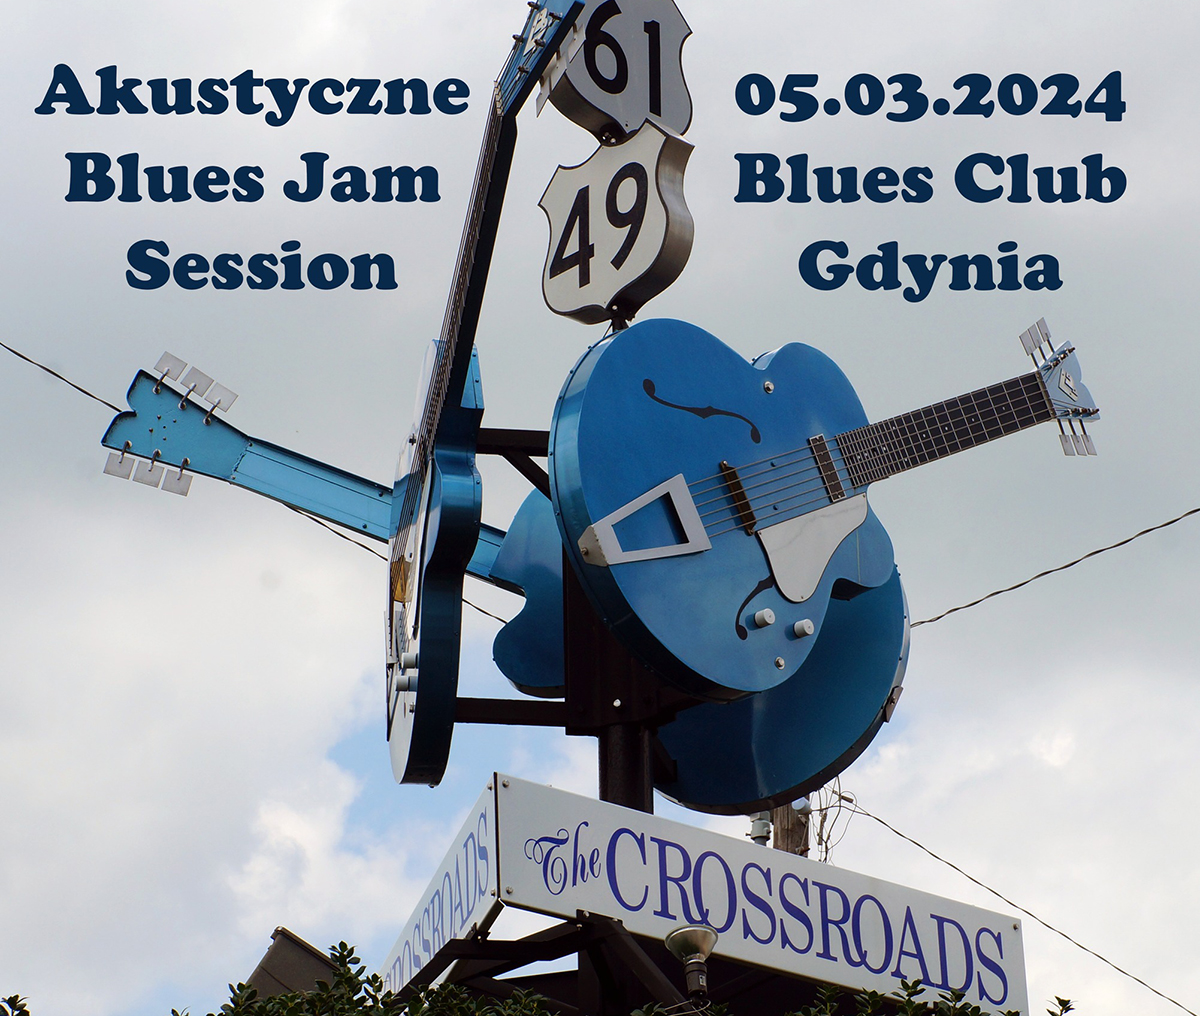 Akustyczne Blues Jam Session by Brian Tomaszewski